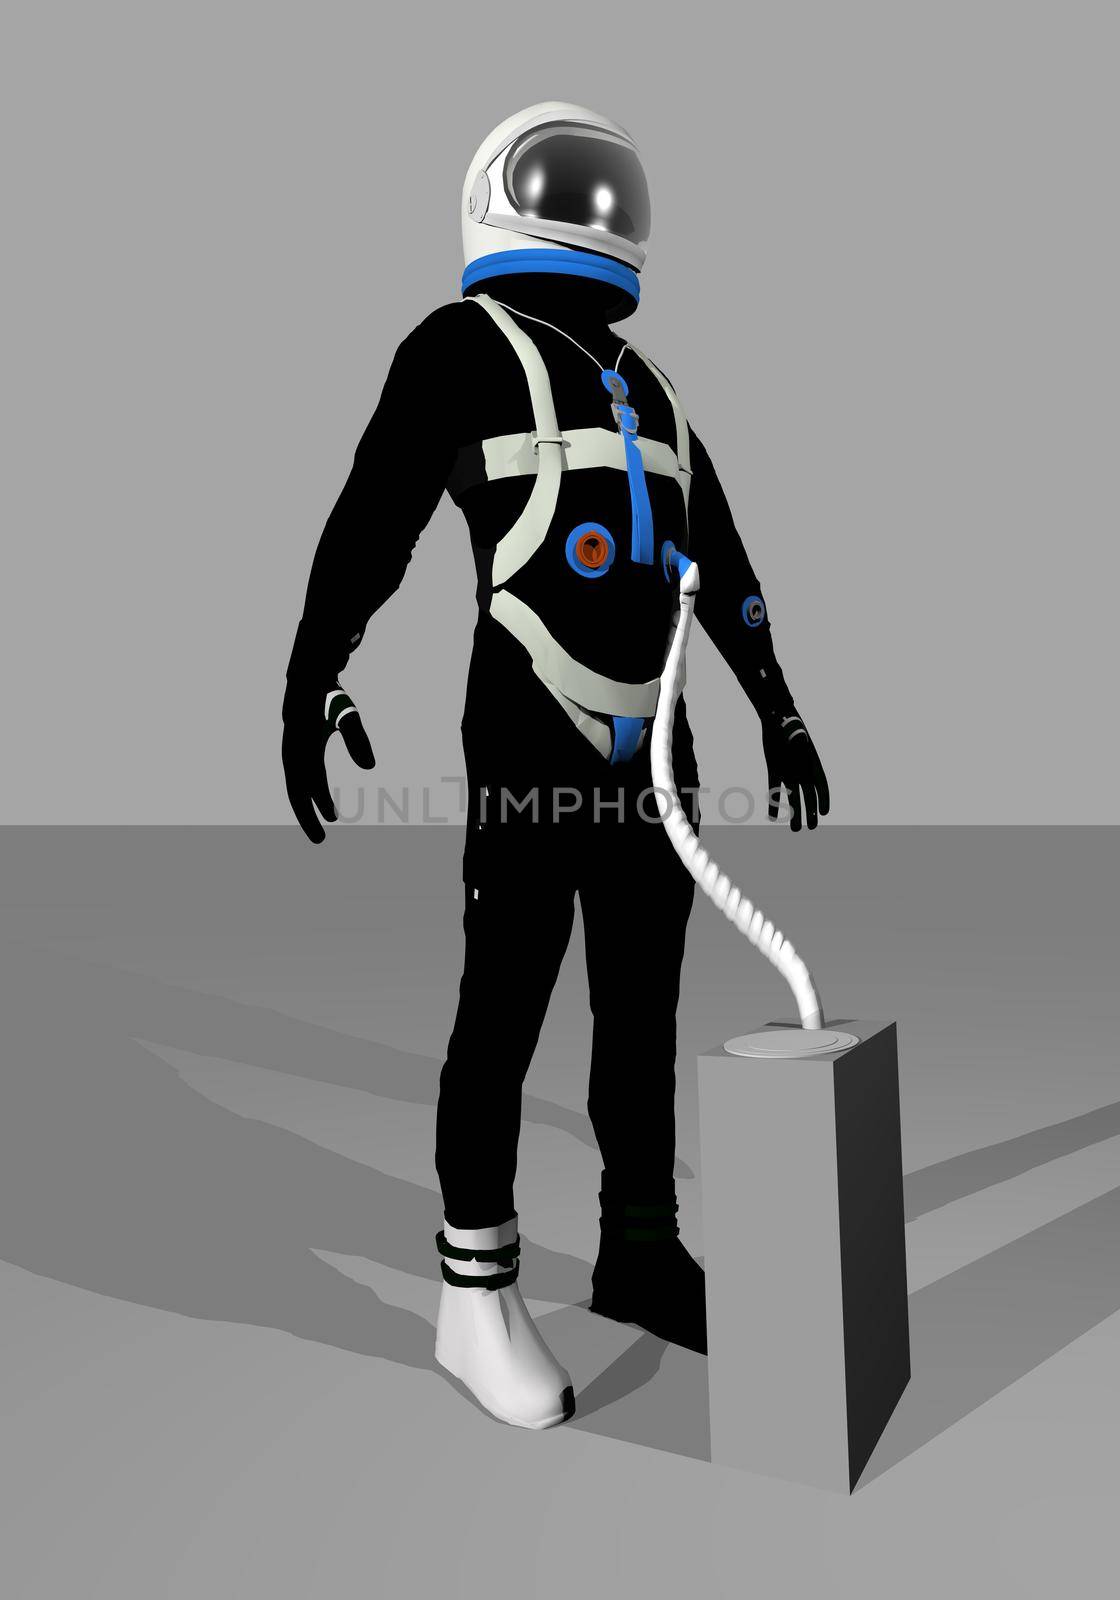 Gemini space suit - 3D render by Elenaphotos21